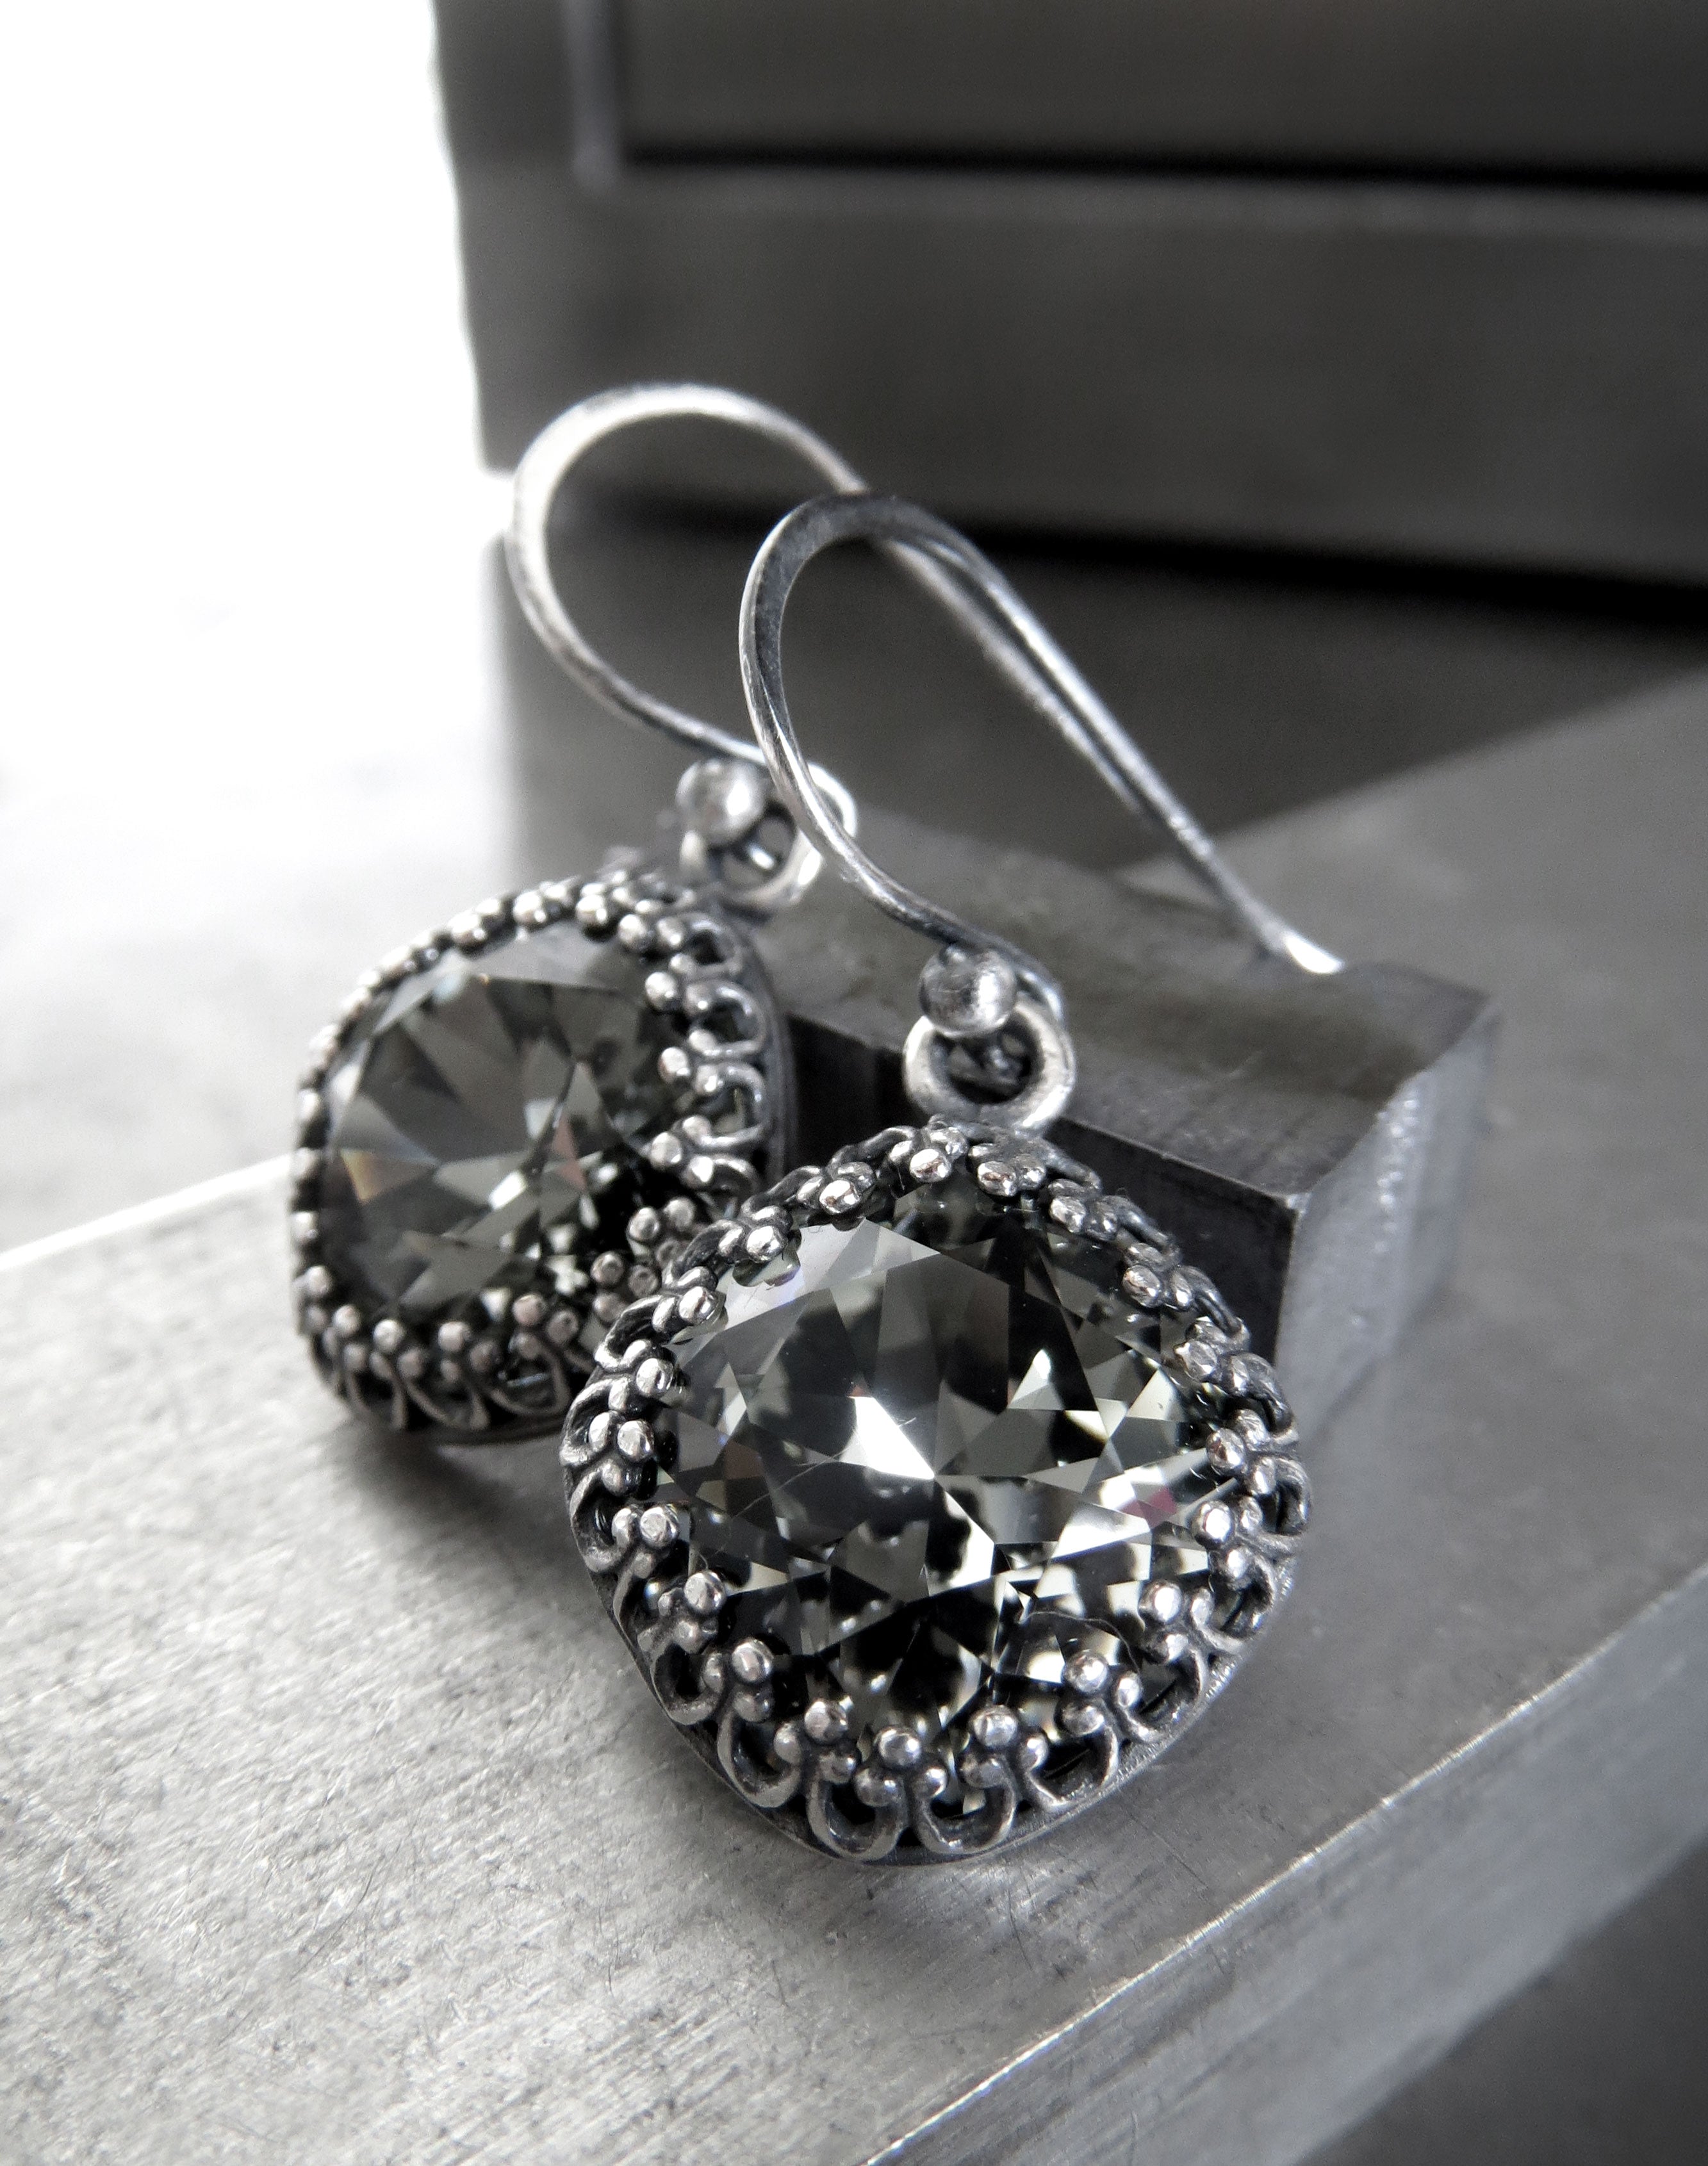 ETERNITY - Black Diamond Crystal Earrings in Vintage Style Crown Bezels